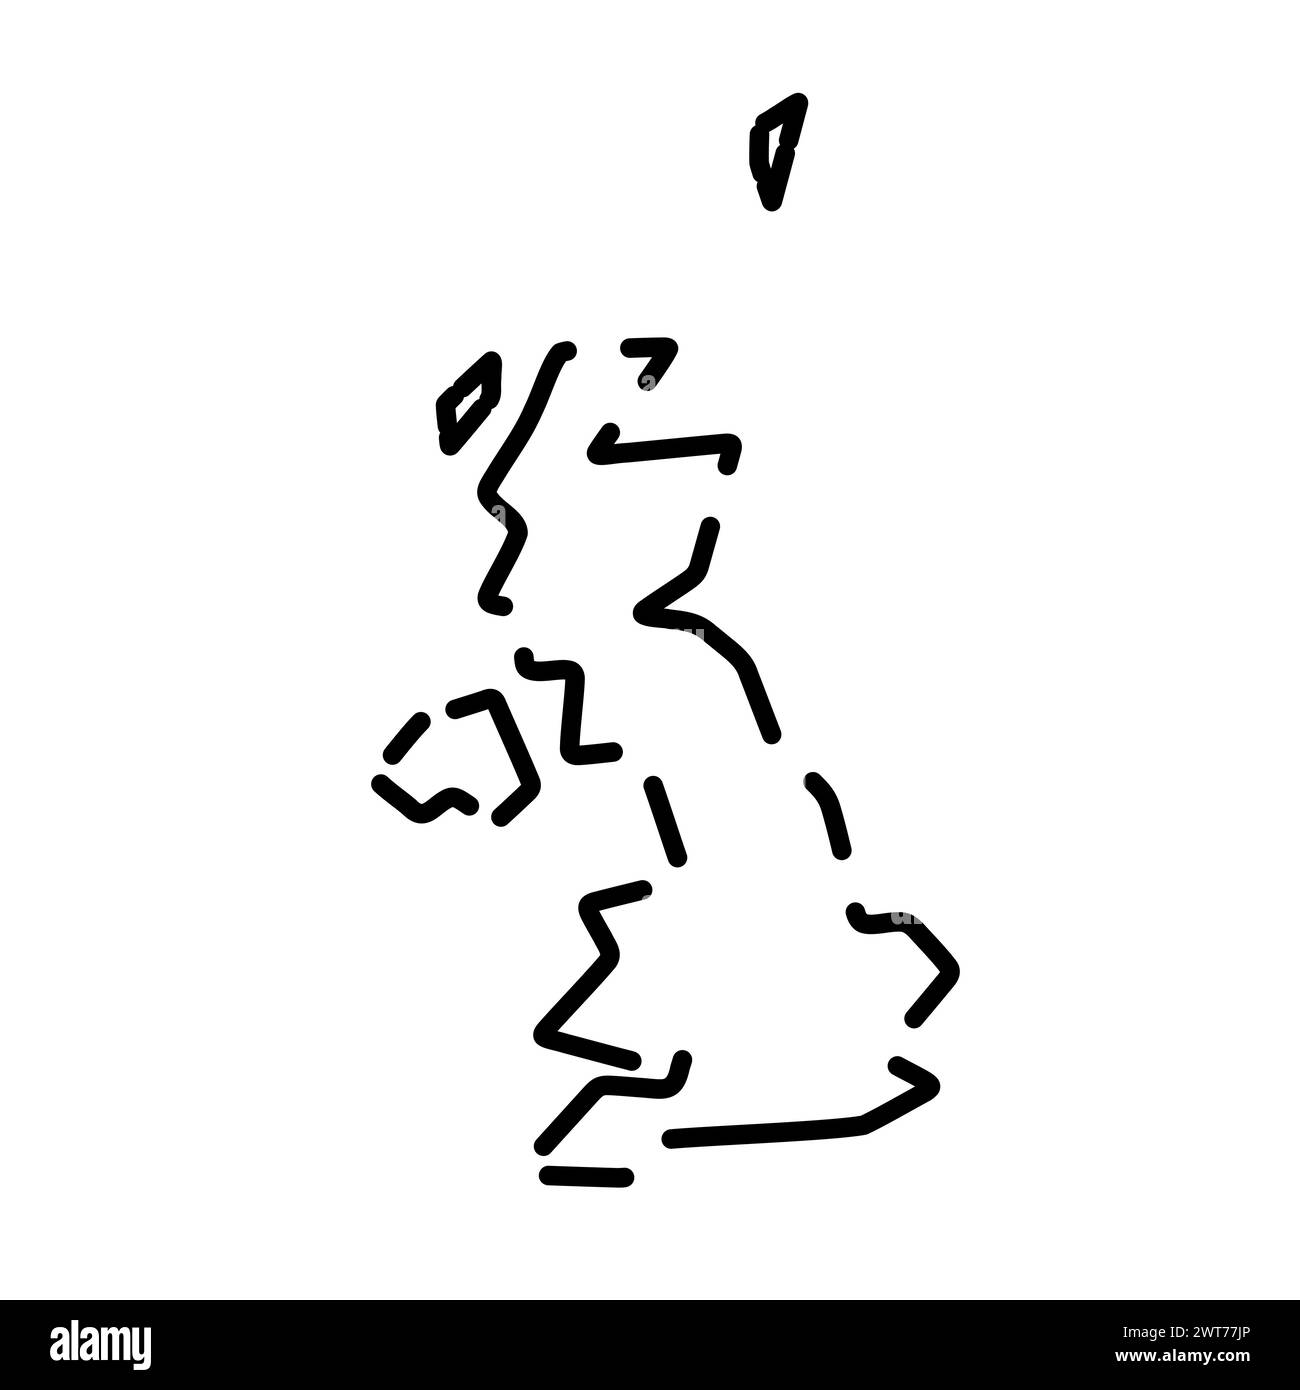 Vereinfachte Landkarte des Vereinigten Königreichs Großbritannien und Nordirland. Schwarze gebrochene Kontur auf weißem Hintergrund. Einfaches Vektorsymbol Stock Vektor